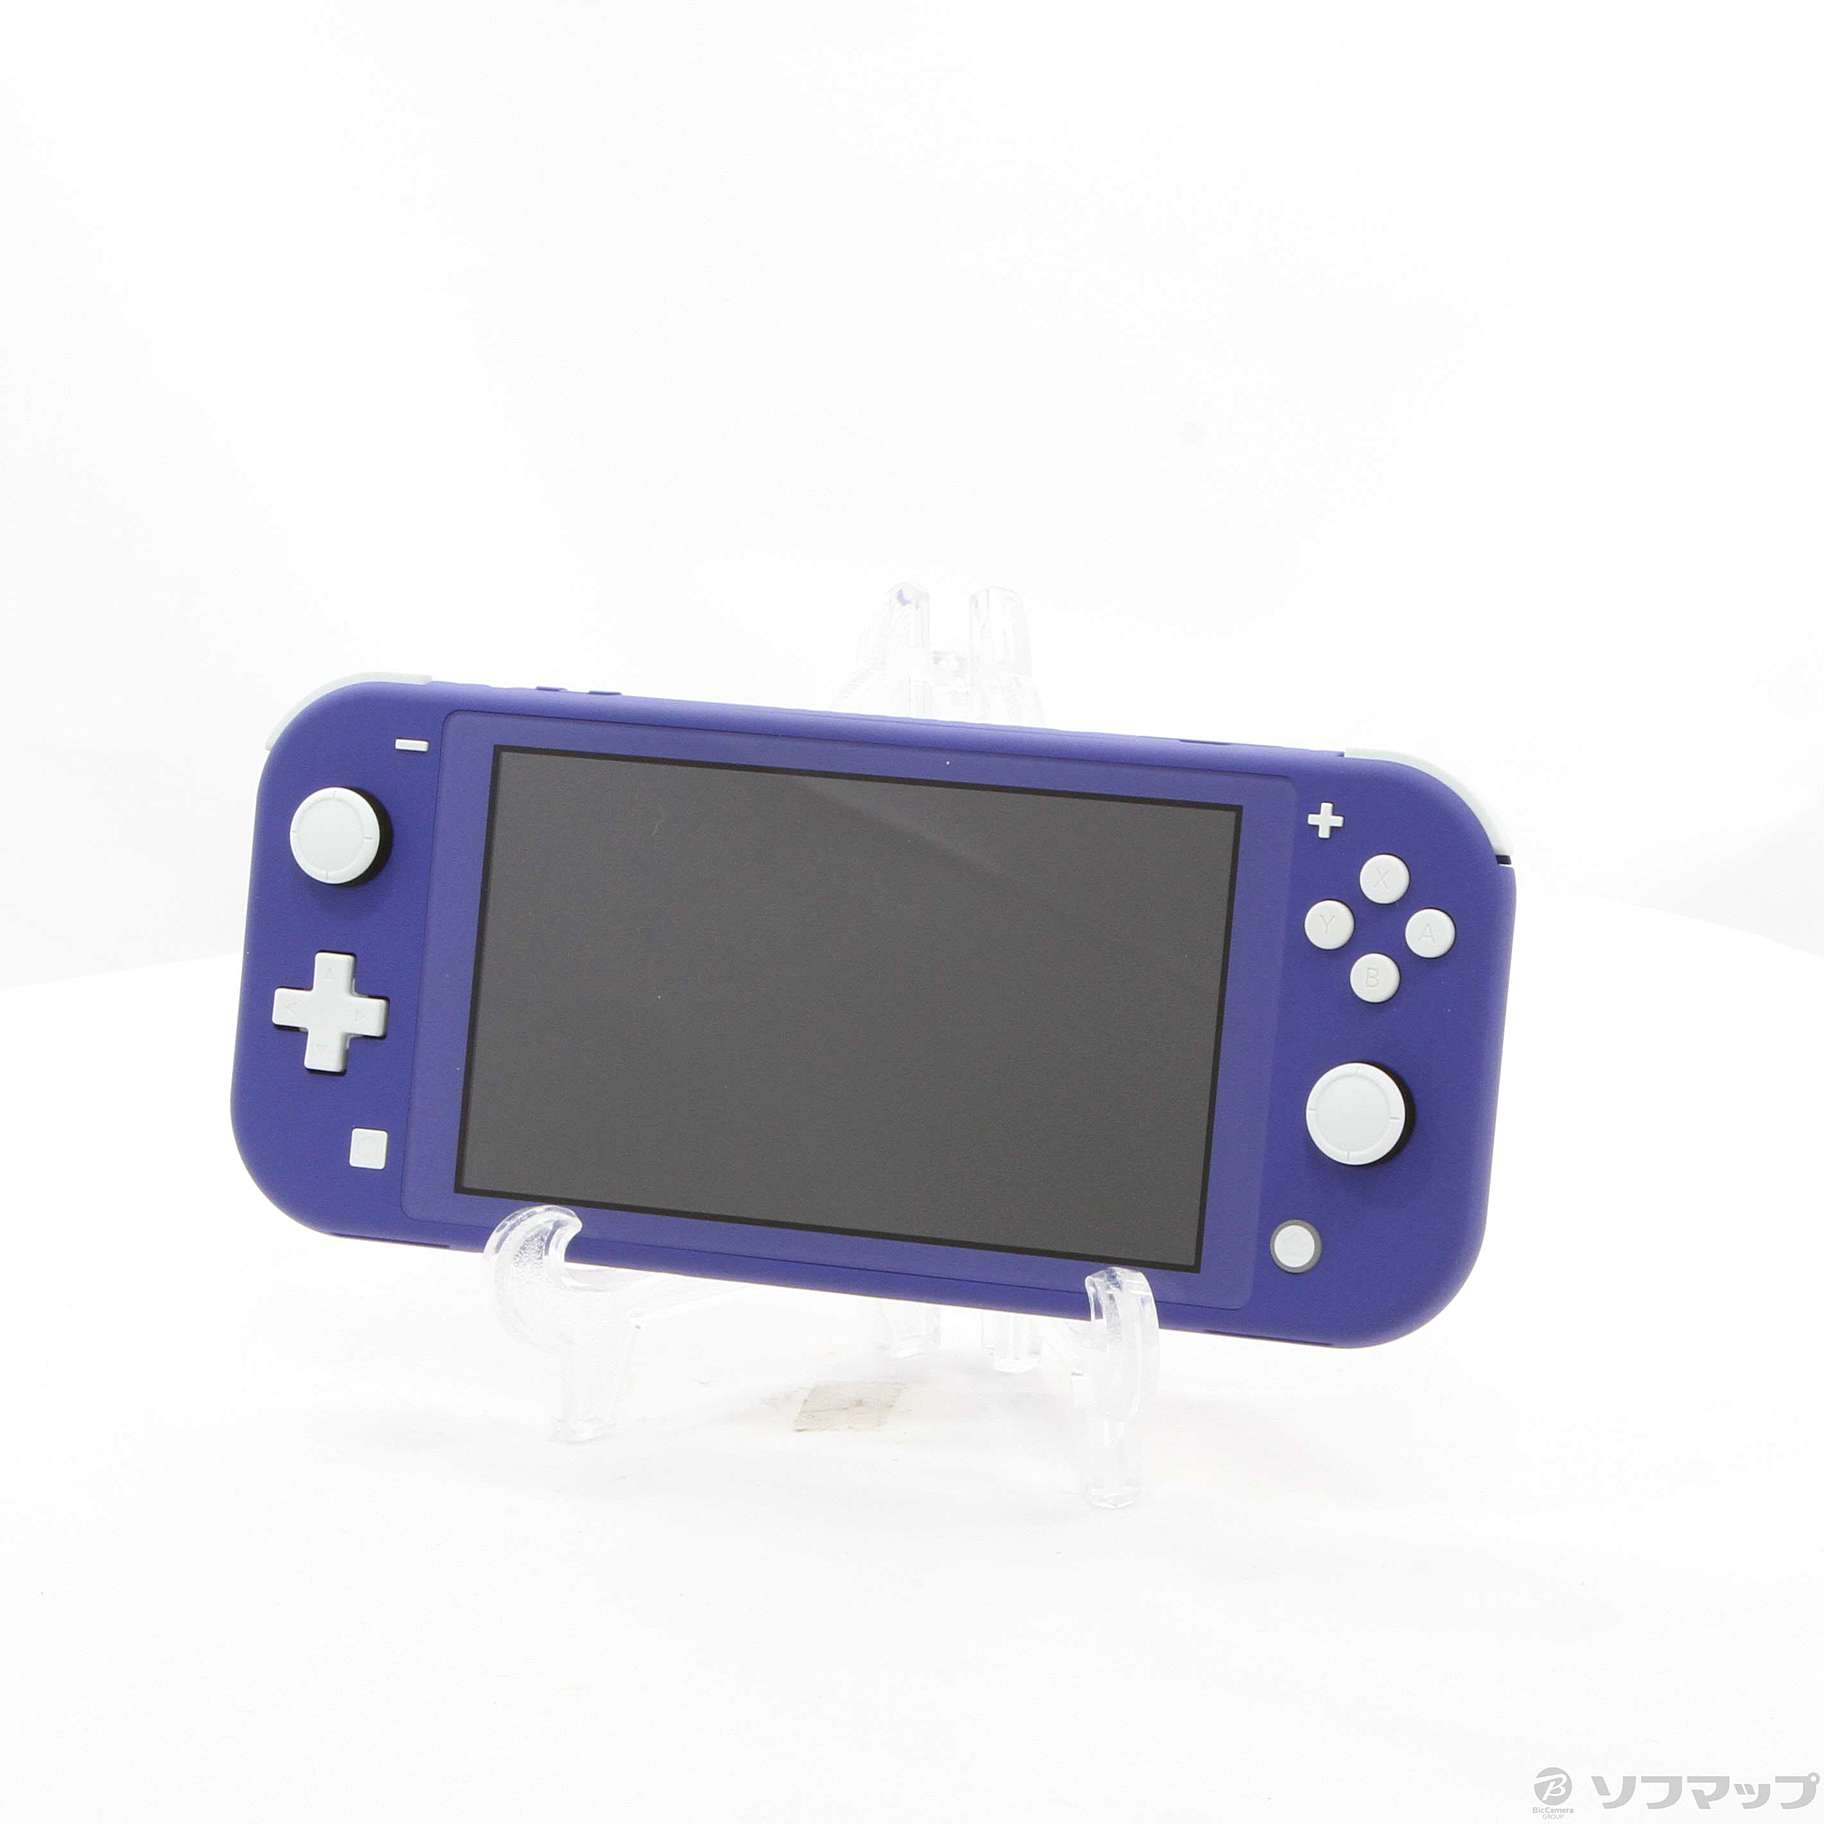 中古】セール対象品 Nintendo Switch Lite ブルー ◇12/15(水)値下げ